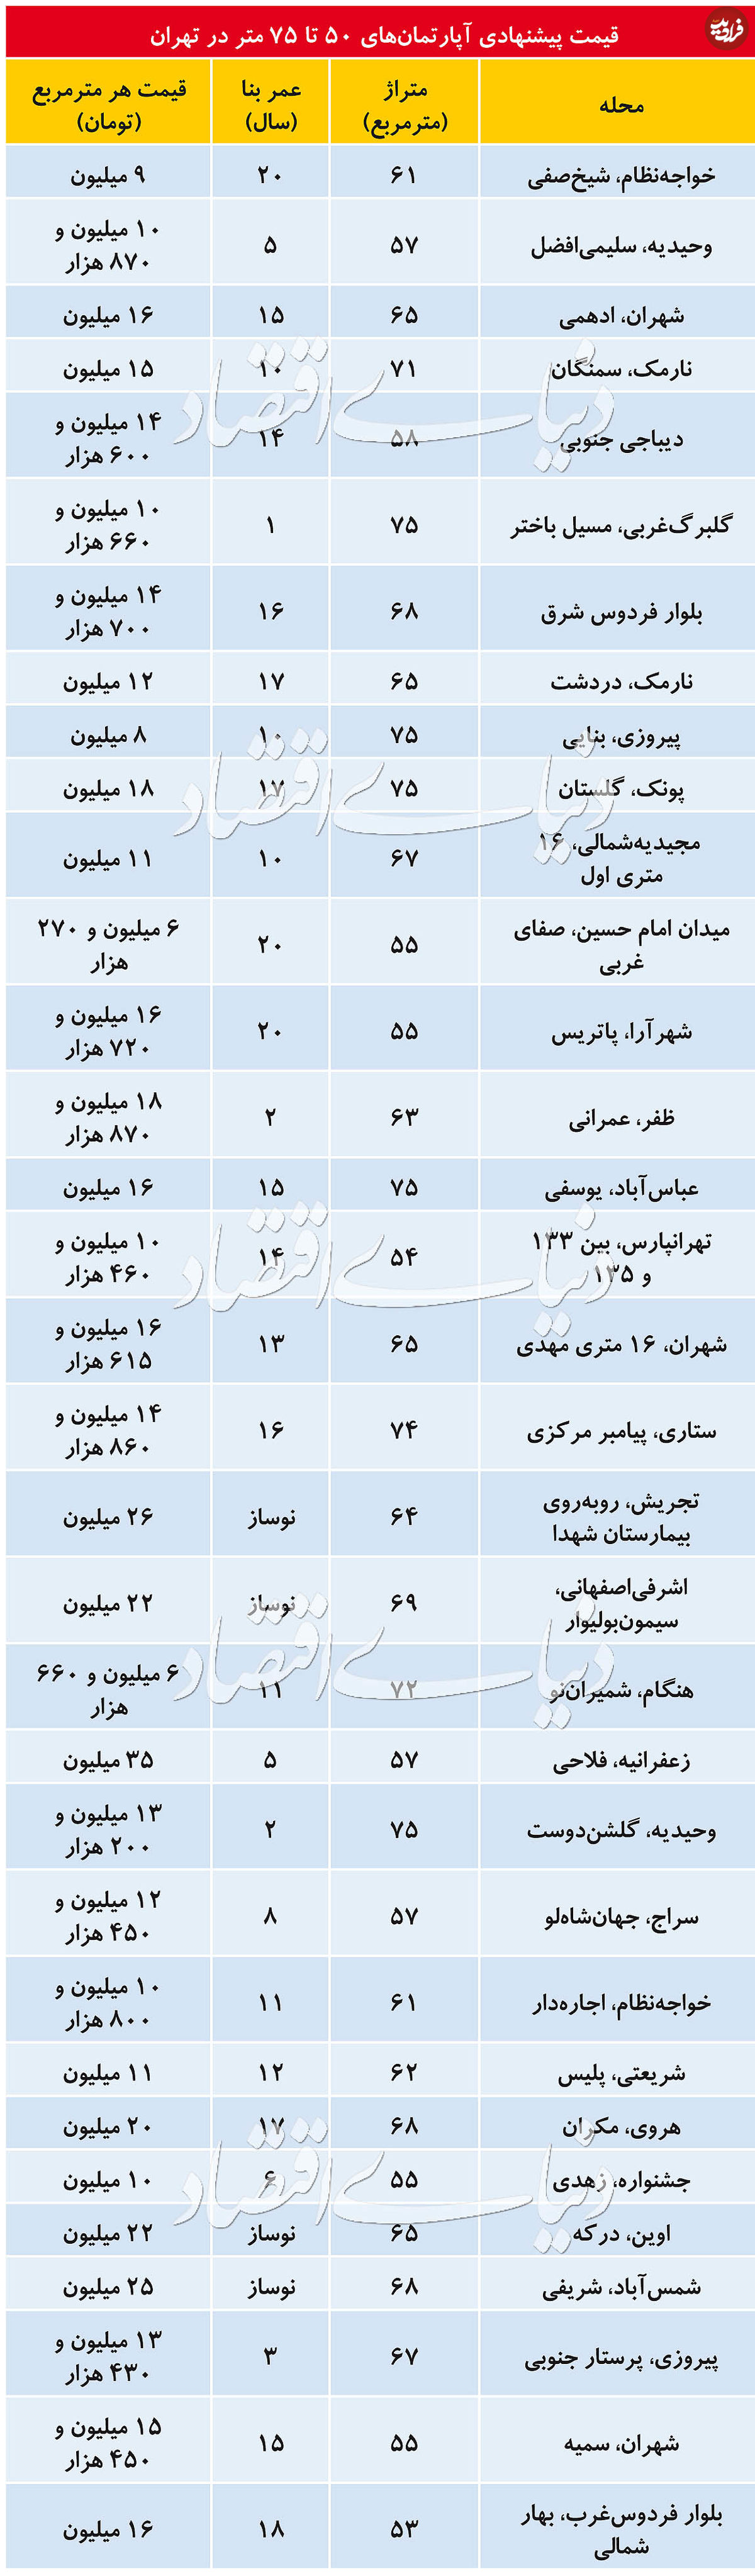 قیمت آپارتمان ۵۰ تا ۷۵ متری در تهران